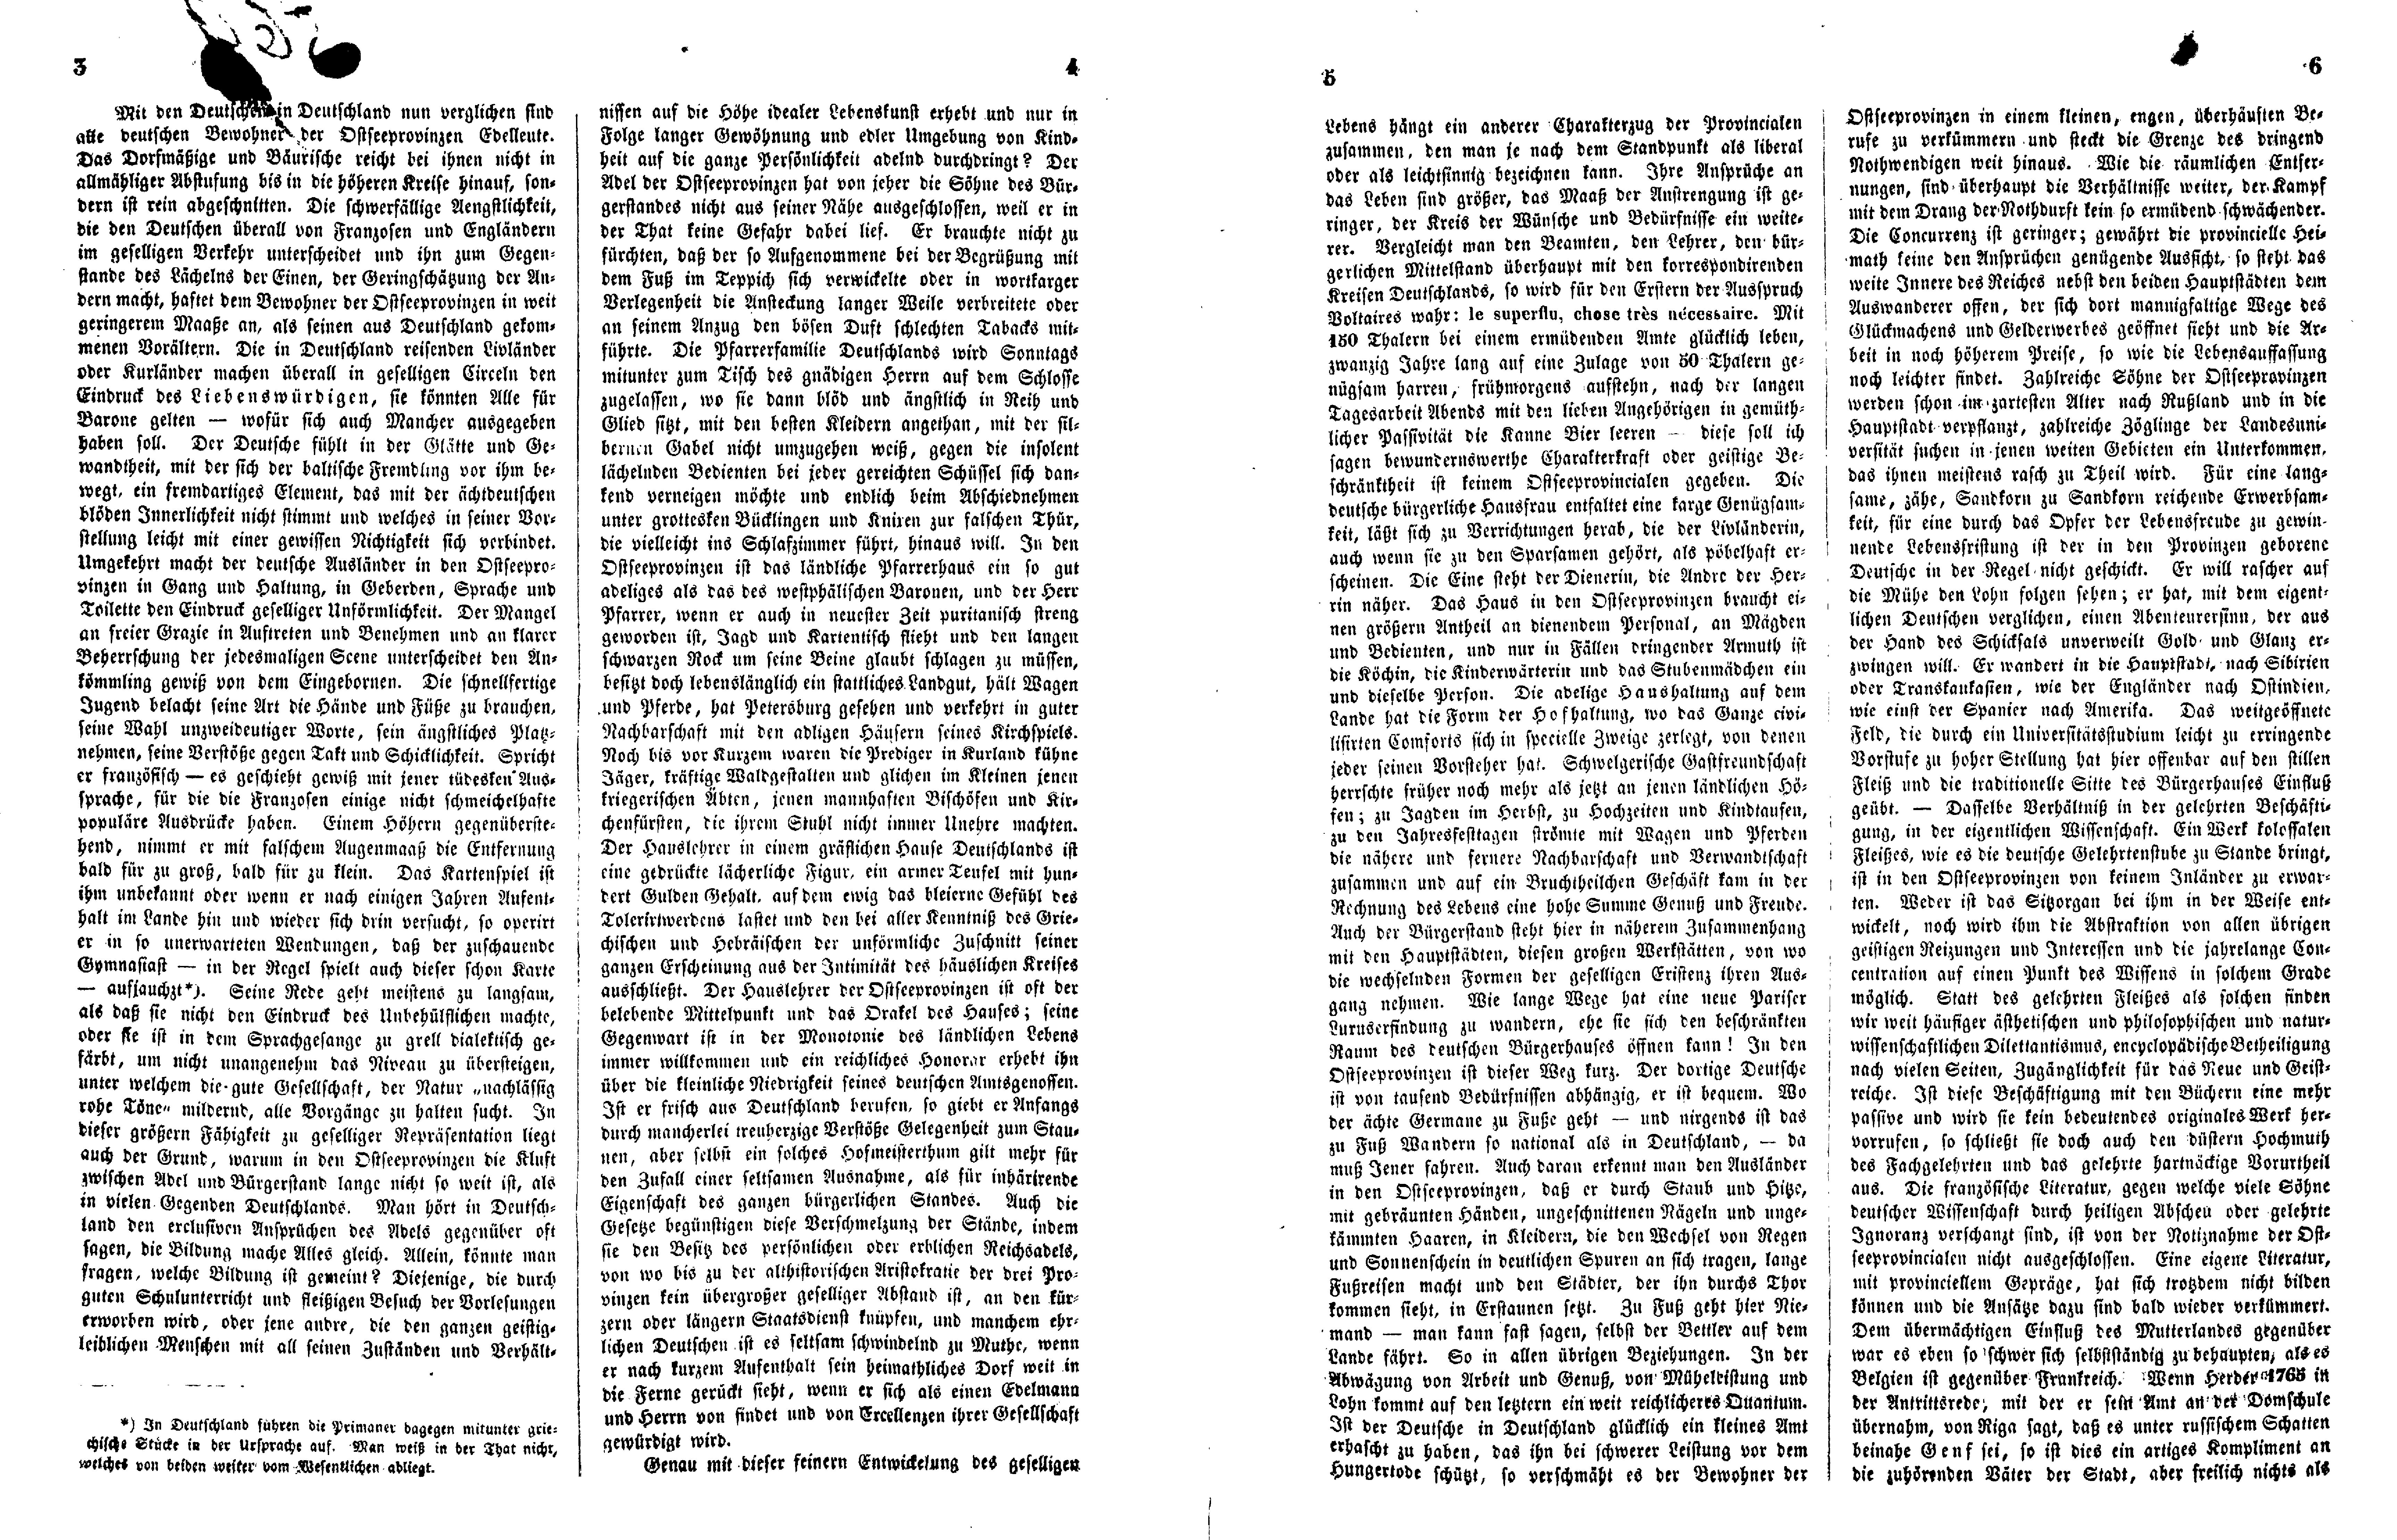 Ueber den Charakter der Liv-, Esth- und Kurländer (1848) | 2. (3-6) Main body of text